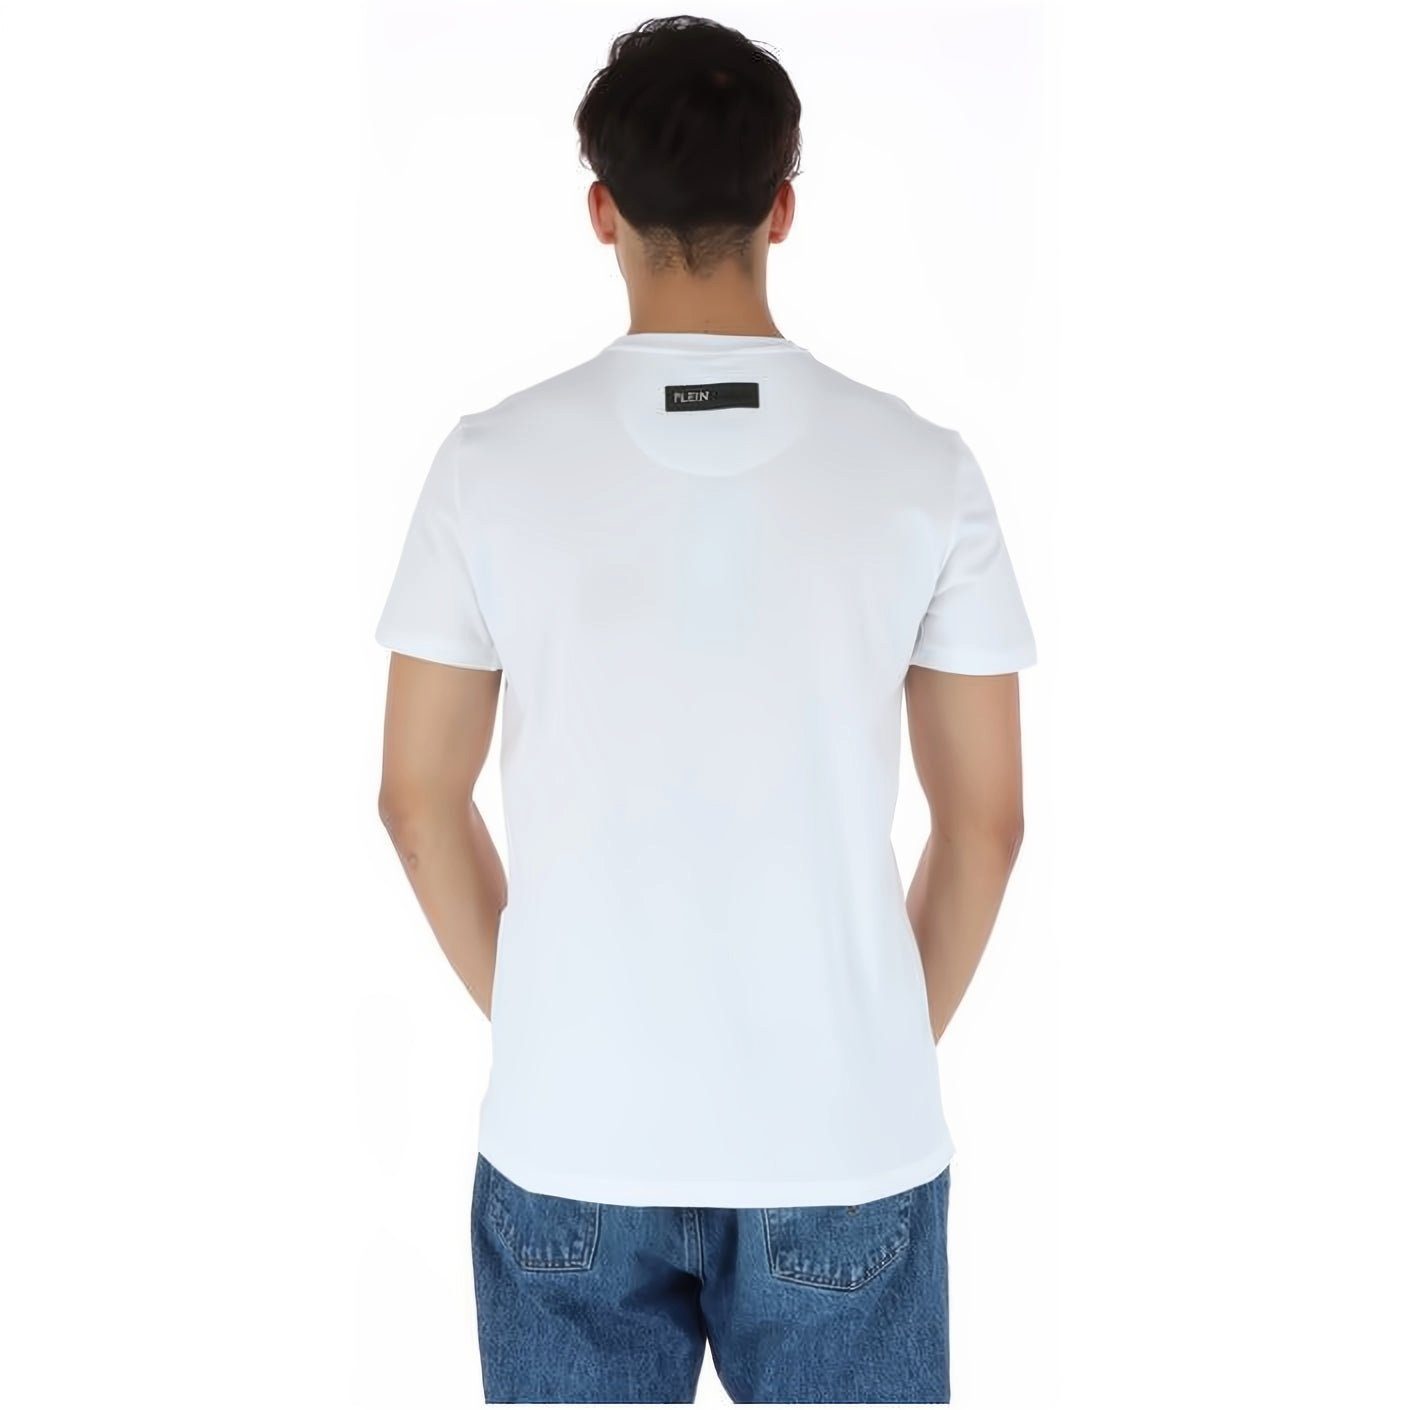 Stylischer Tragekomfort, SPORT hoher vielfältige PLEIN T-Shirt NECK Look, Farbauswahl ROUND